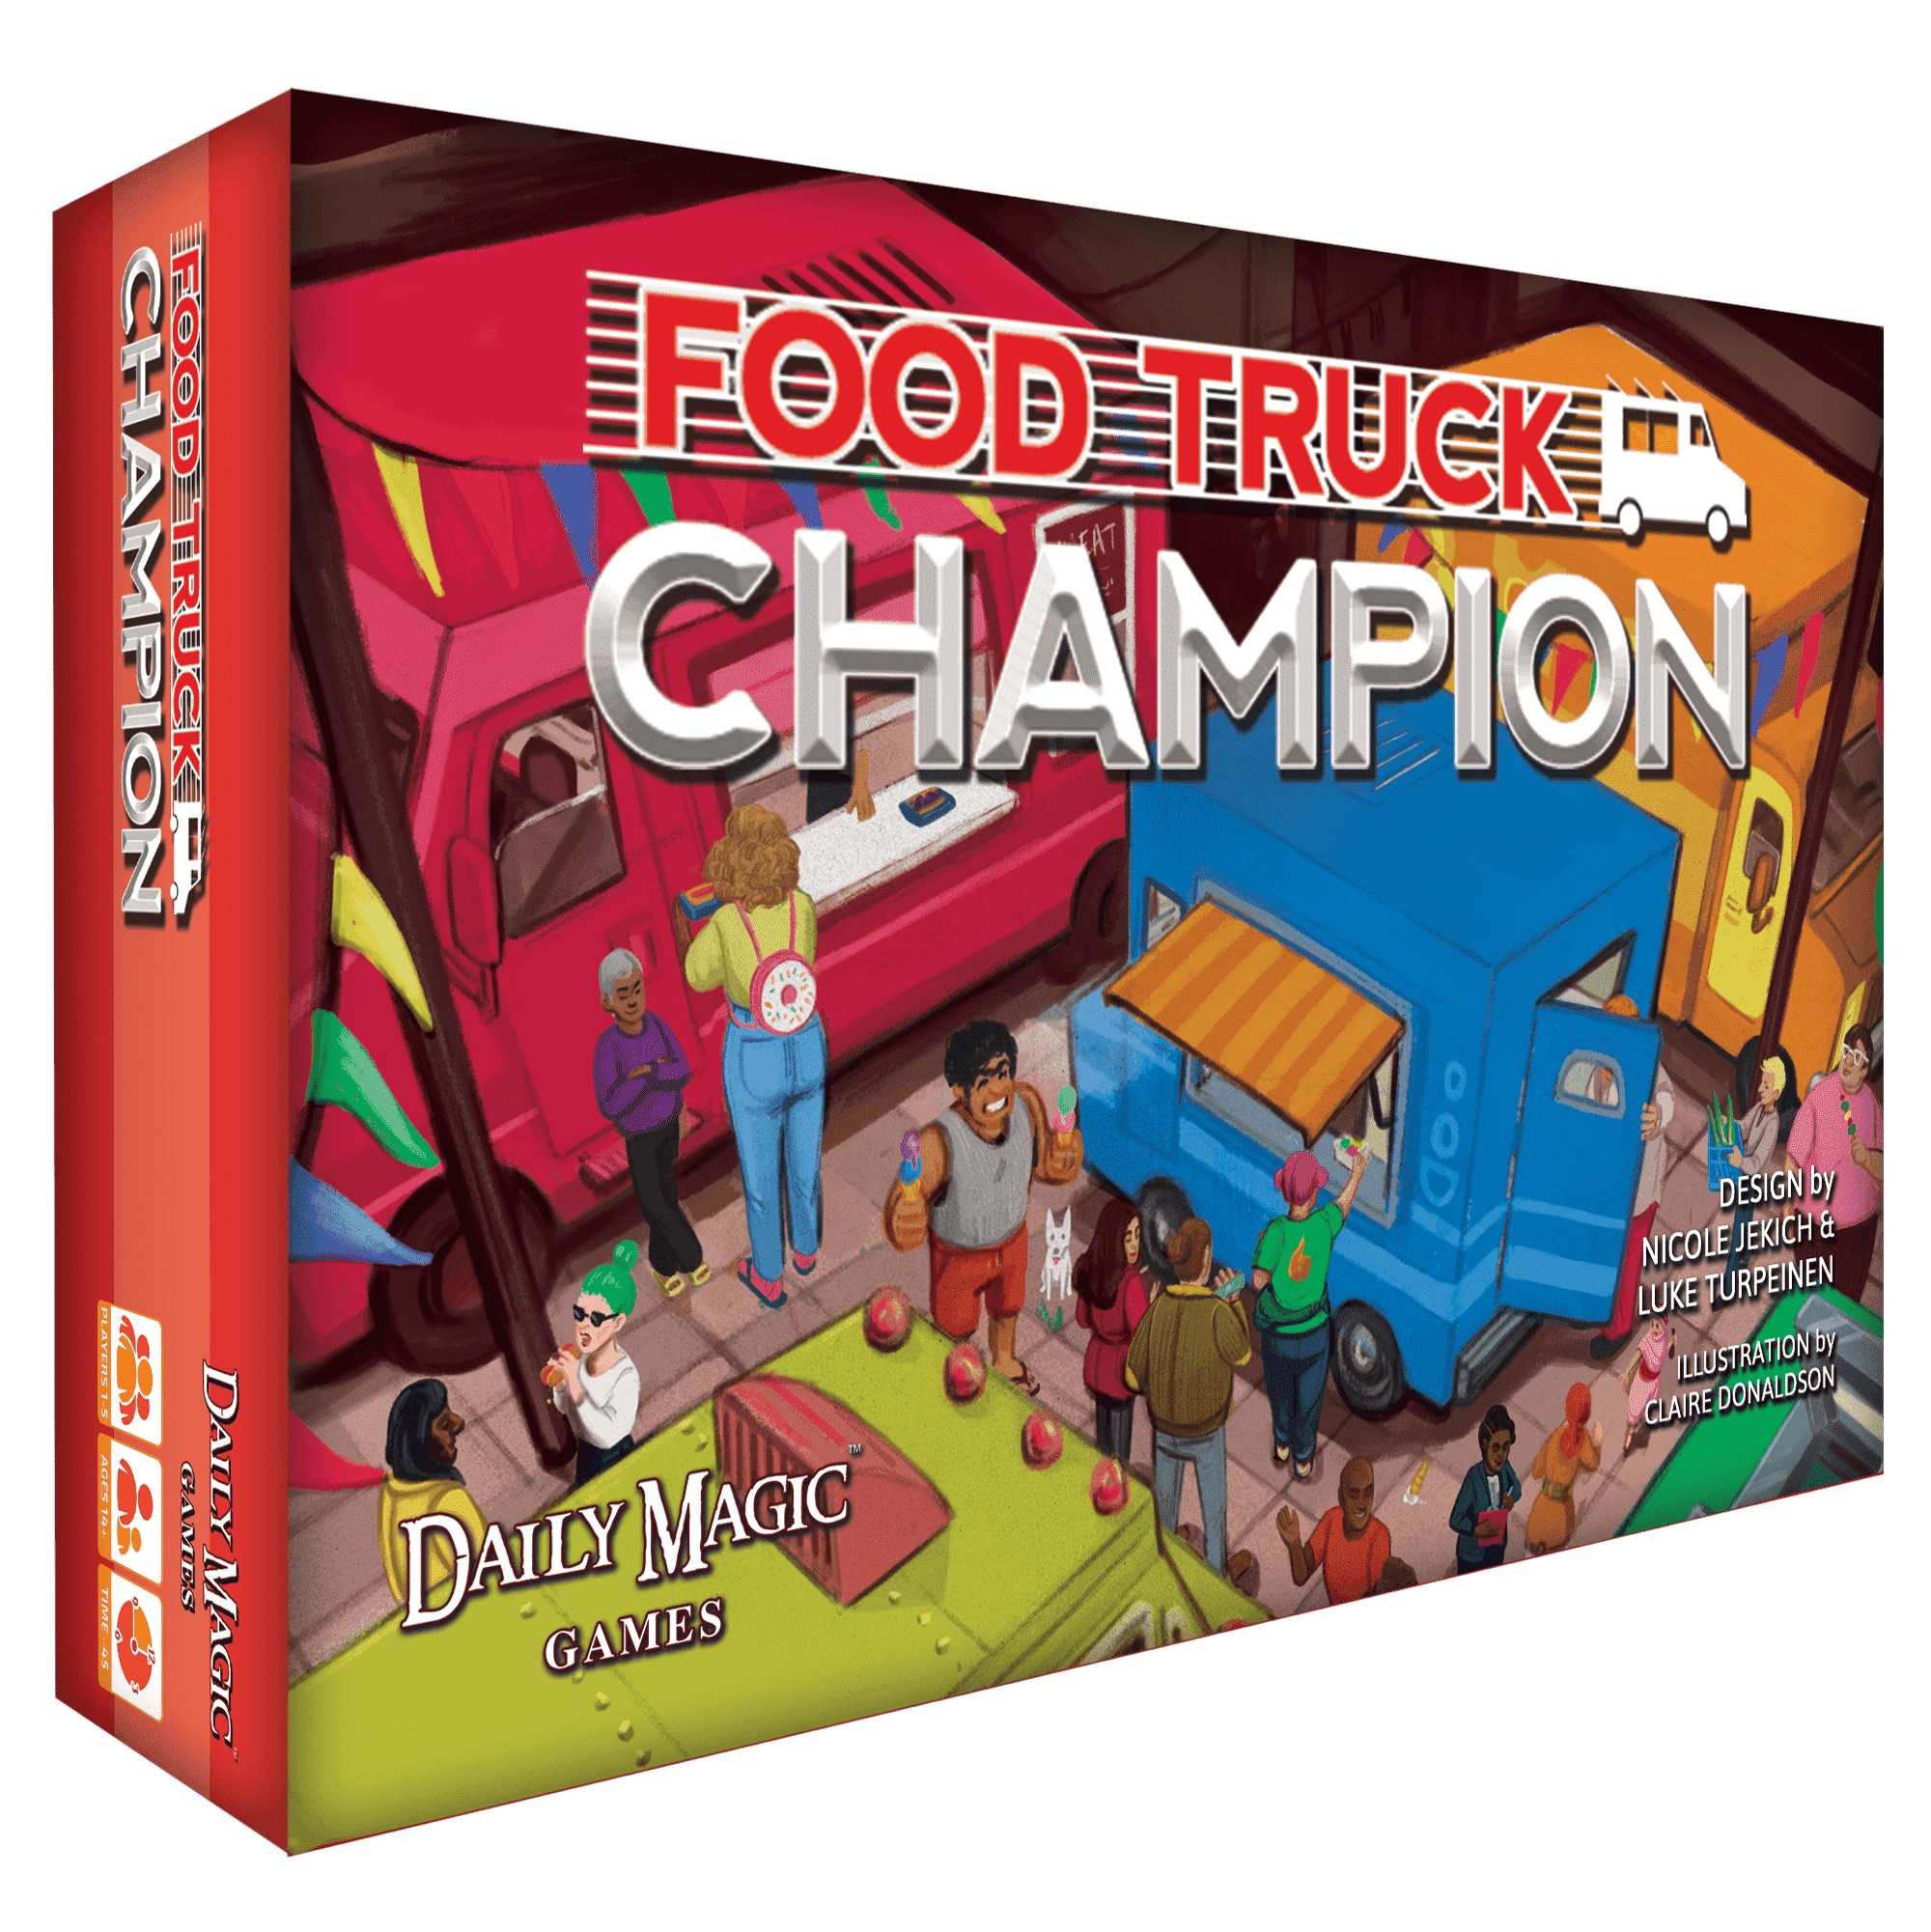 אלוף משאית אוכל: מהדורת דלוקס (Kickstarter Special) משחק לוח קיקסטארטר Daily Magic Games